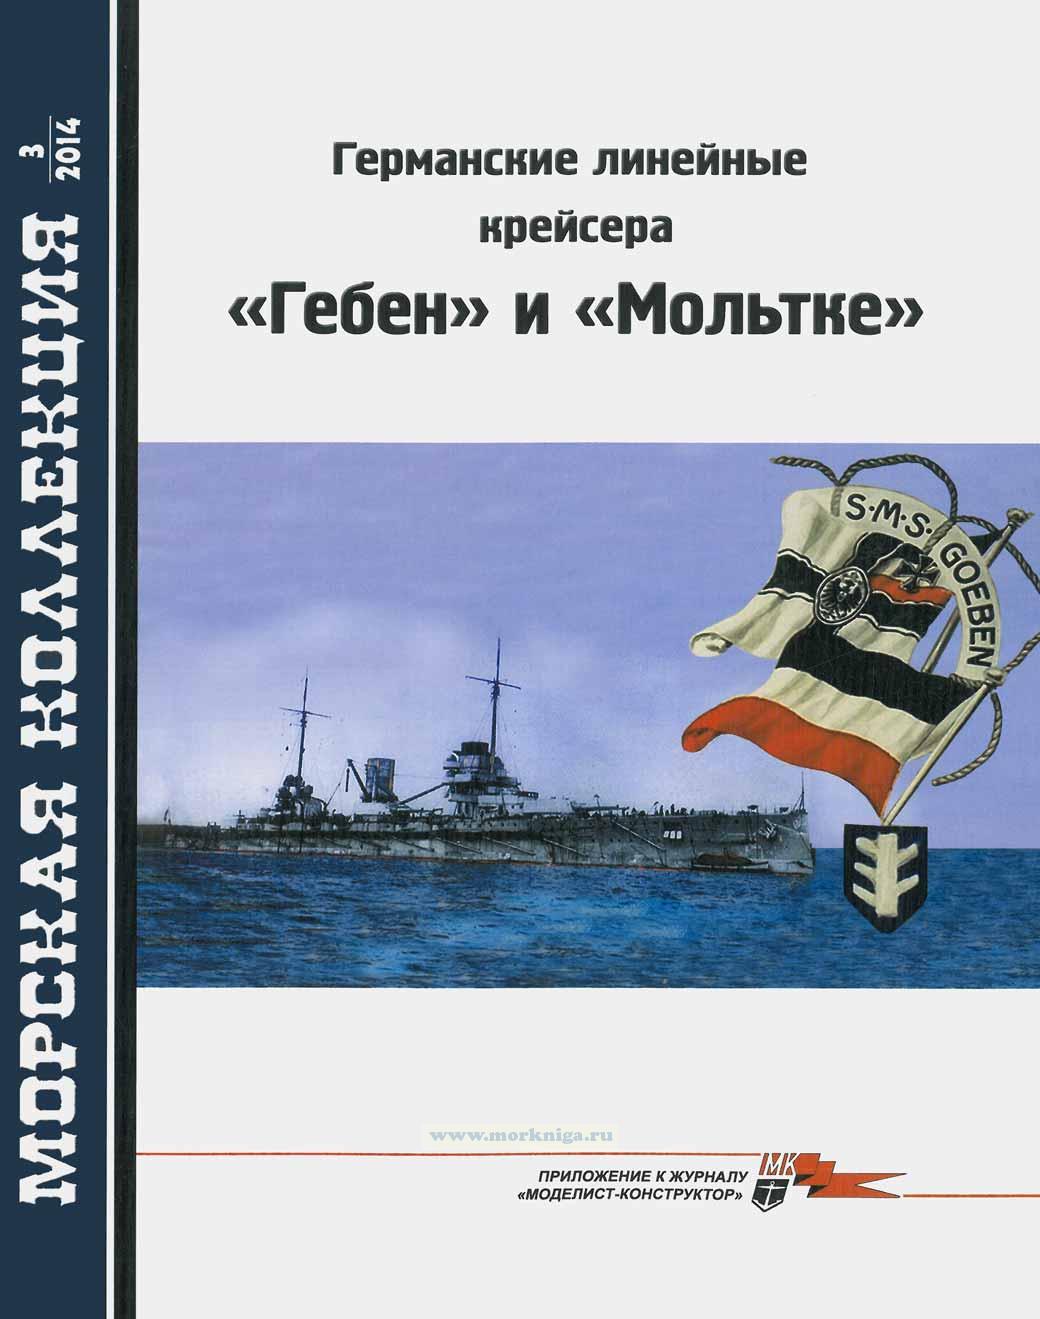 Германские линейные крейсера "ГЕБЕН" и "МОЛЬТКЕ". Морская коллекция №3 (2014)